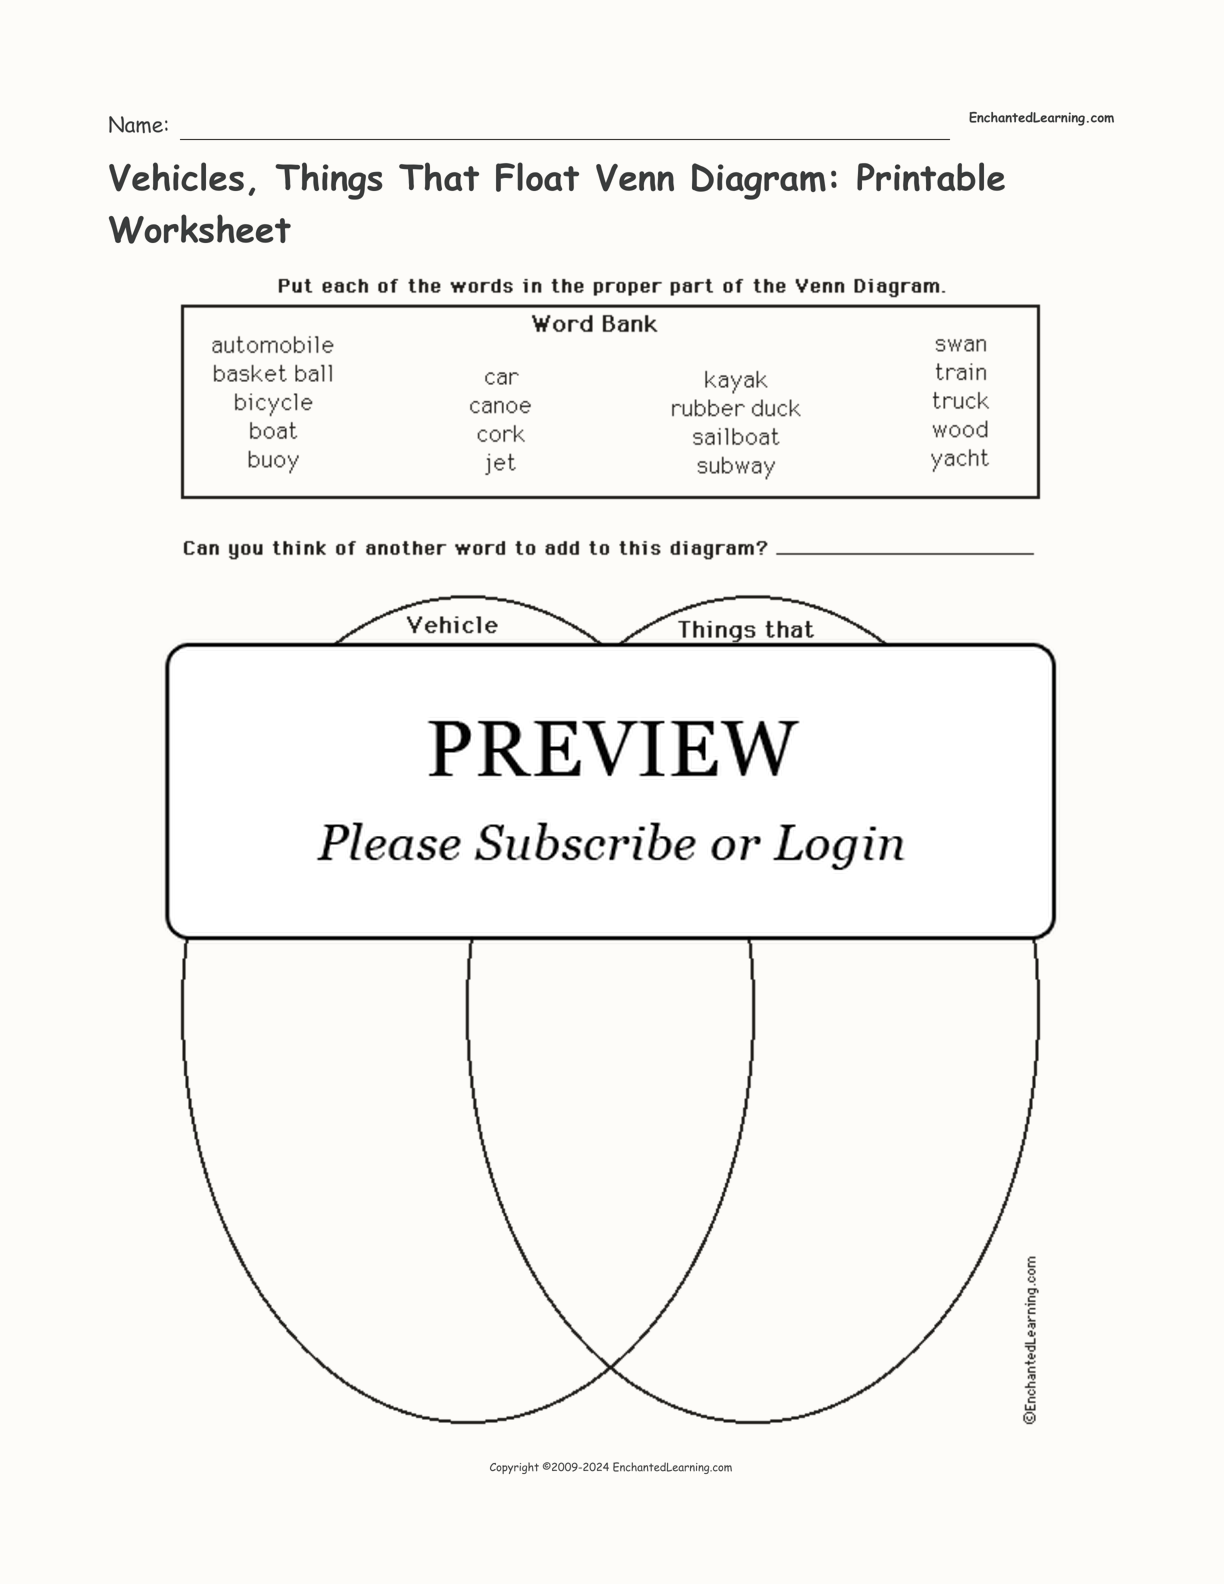 Vehicles, Things That Float Venn Diagram: Printable Worksheet interactive worksheet page 1